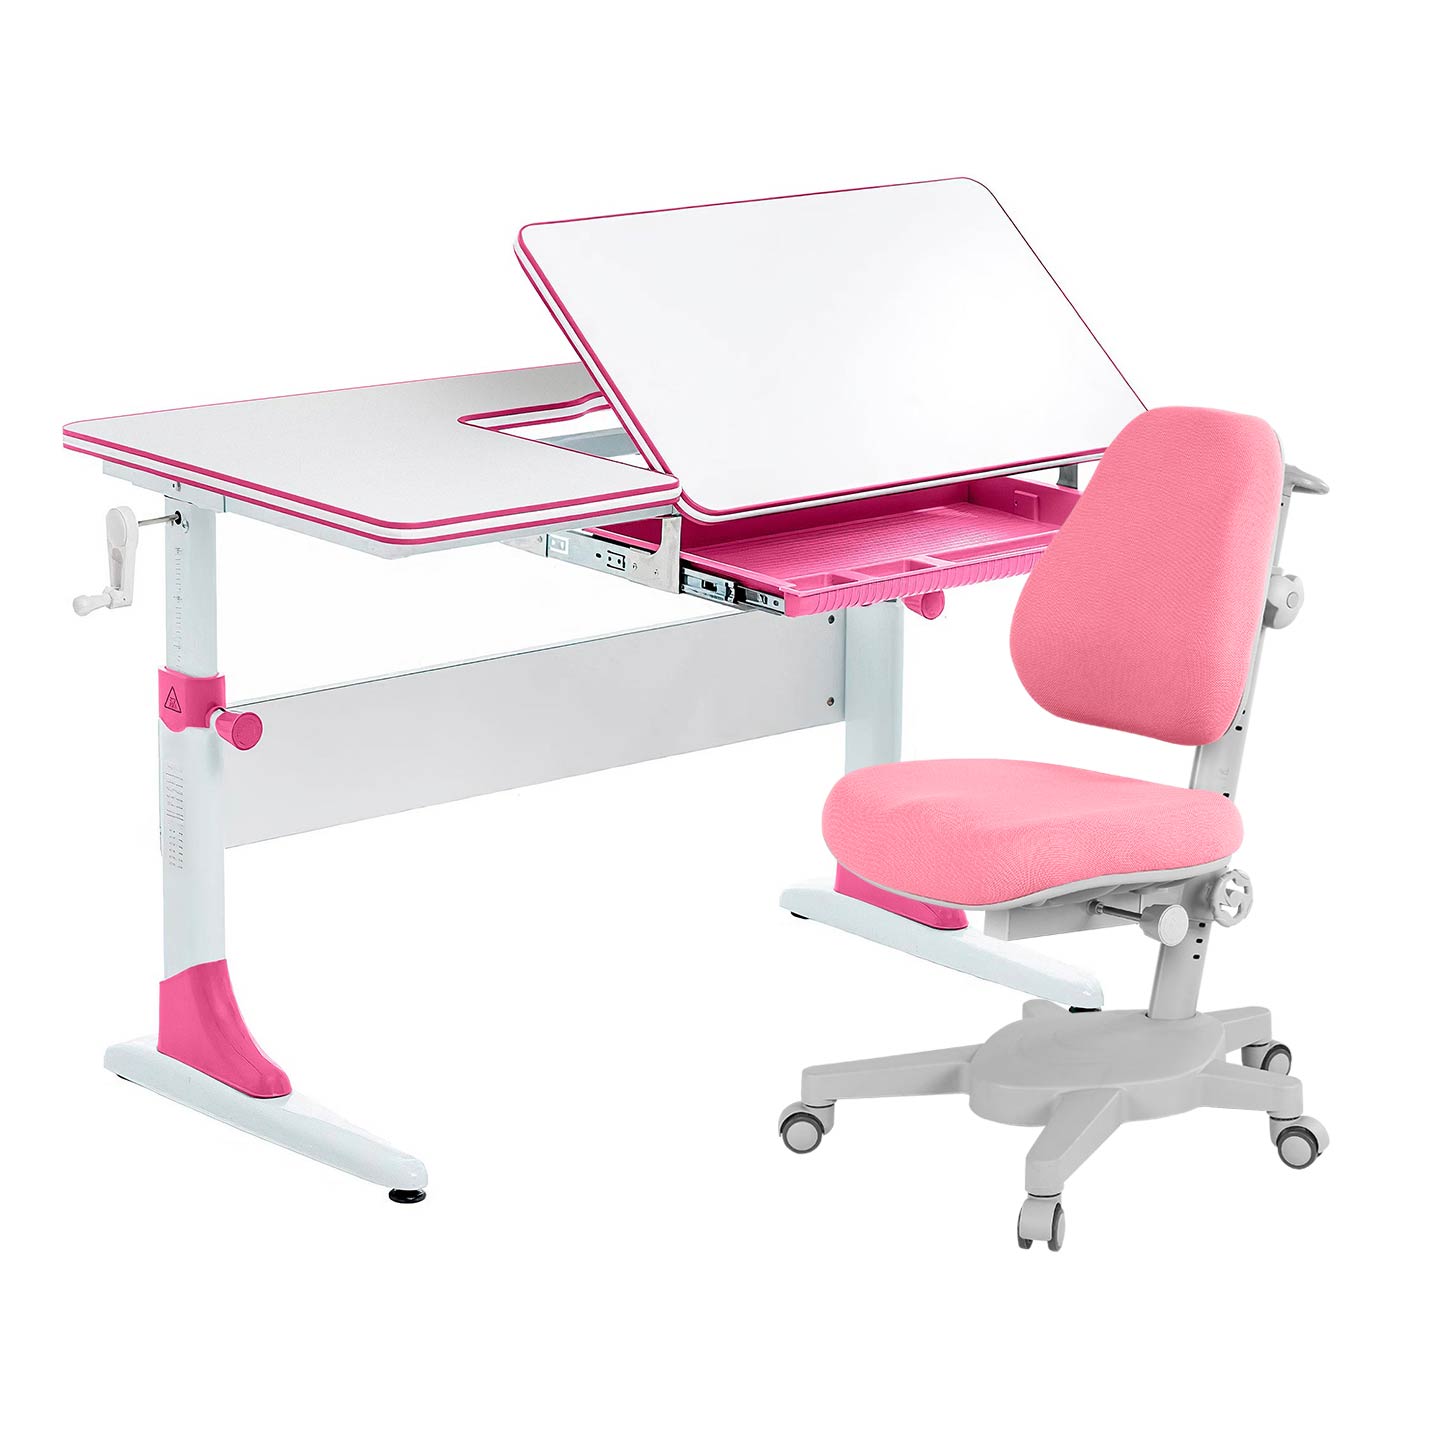 Комплект парта Anatomica Study-100 белый/розовый с розовым креслом Armata комплект парта anatomica study 100 белый розовый с розовым креслом figra